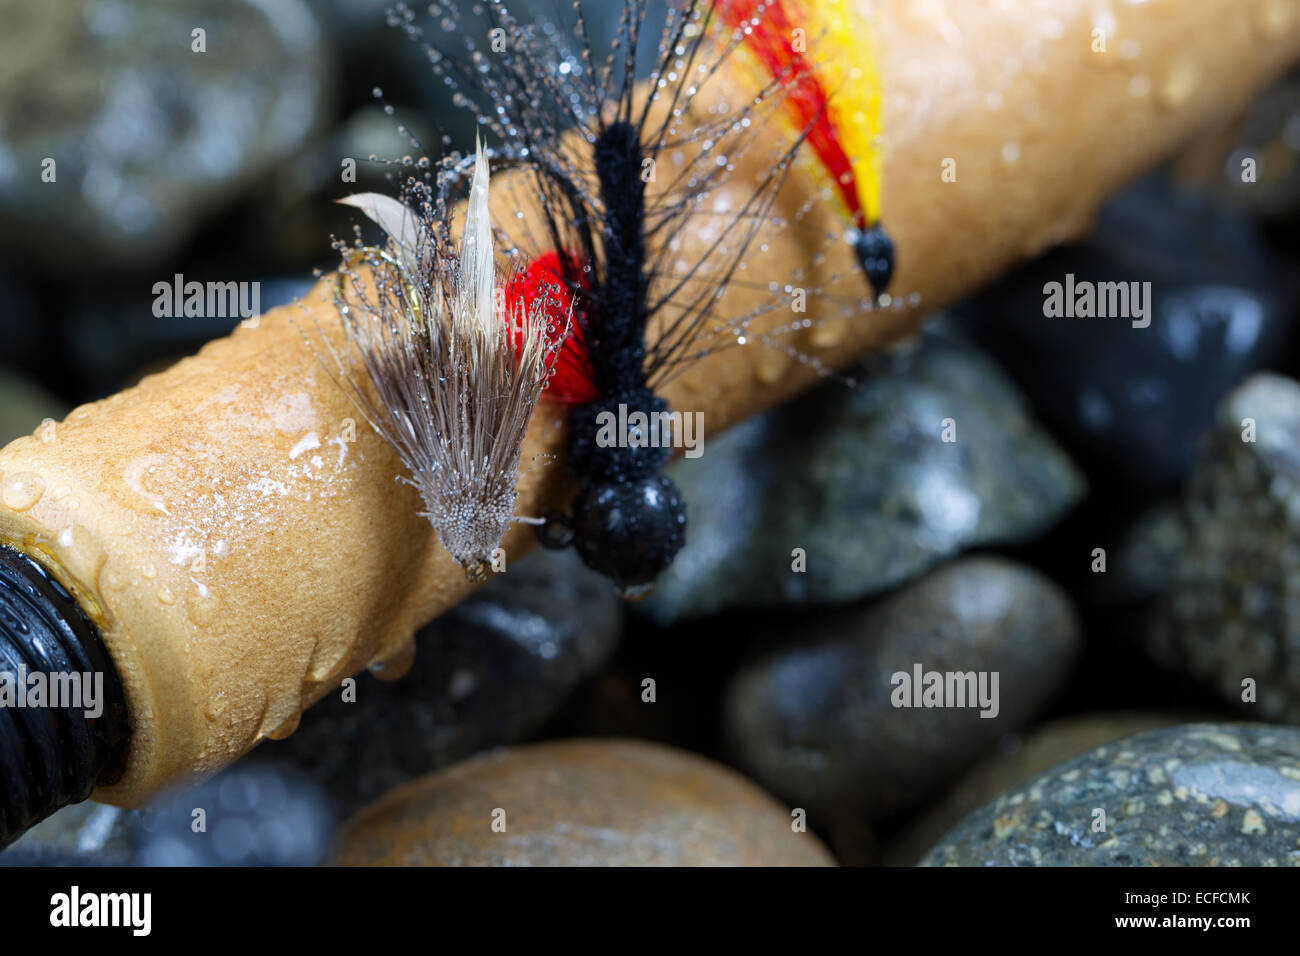 Close up di trote mosche, concentrarsi sulla parte anteriore con una profondità di campo ridotta, sul bagnato manico in sughero della canna da pesca con uscita sfocata riv Foto Stock